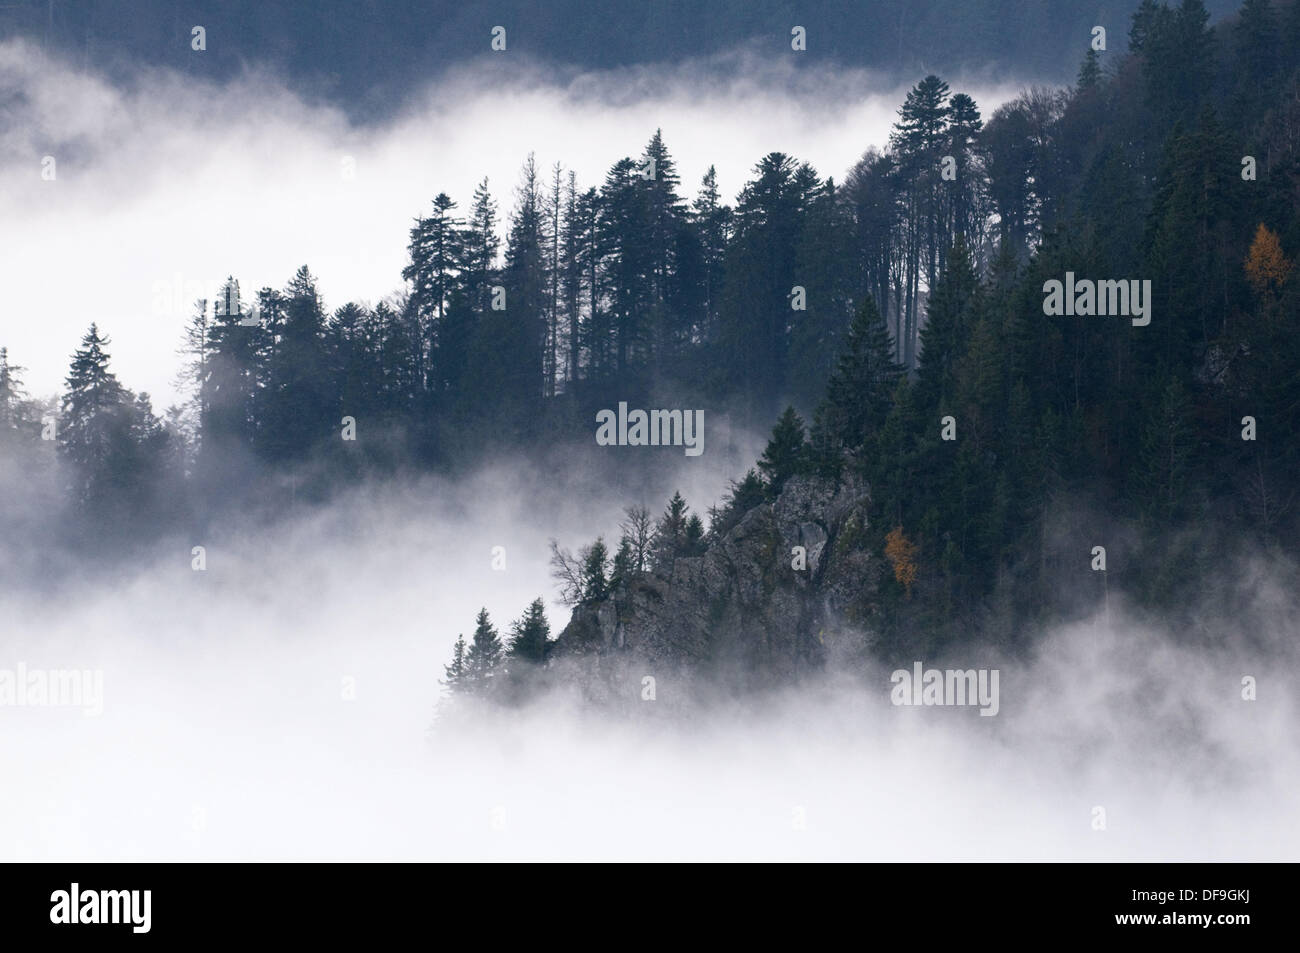 Couverture de brouillard dans les Vosges, l'automne, des chaînes de montagnes, les pentes avec forêt de pins au massif du Hohneck, Vosges, France Banque D'Images